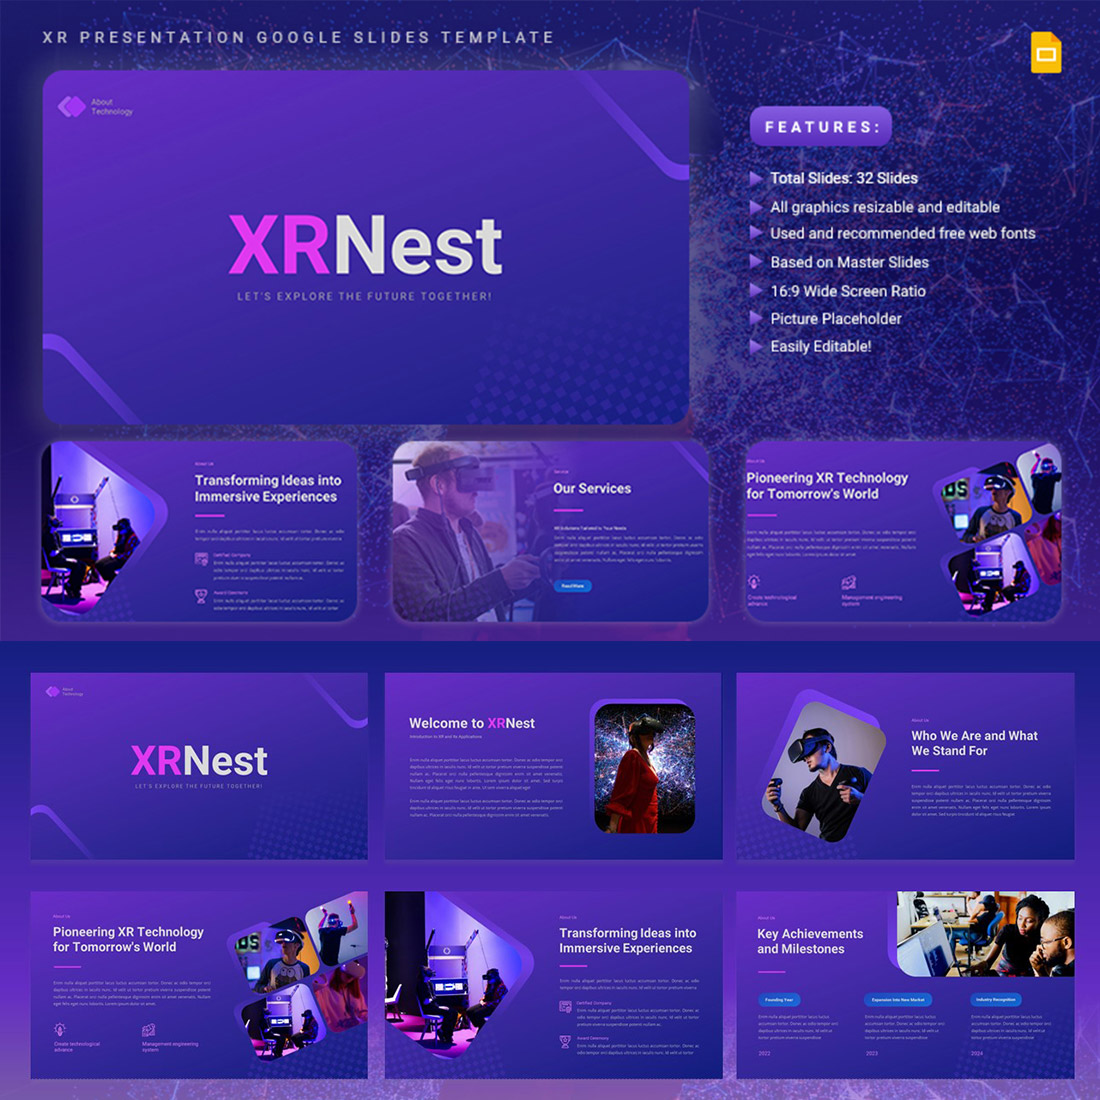 XRNest - XR Presentation Google Slides Template preview image.